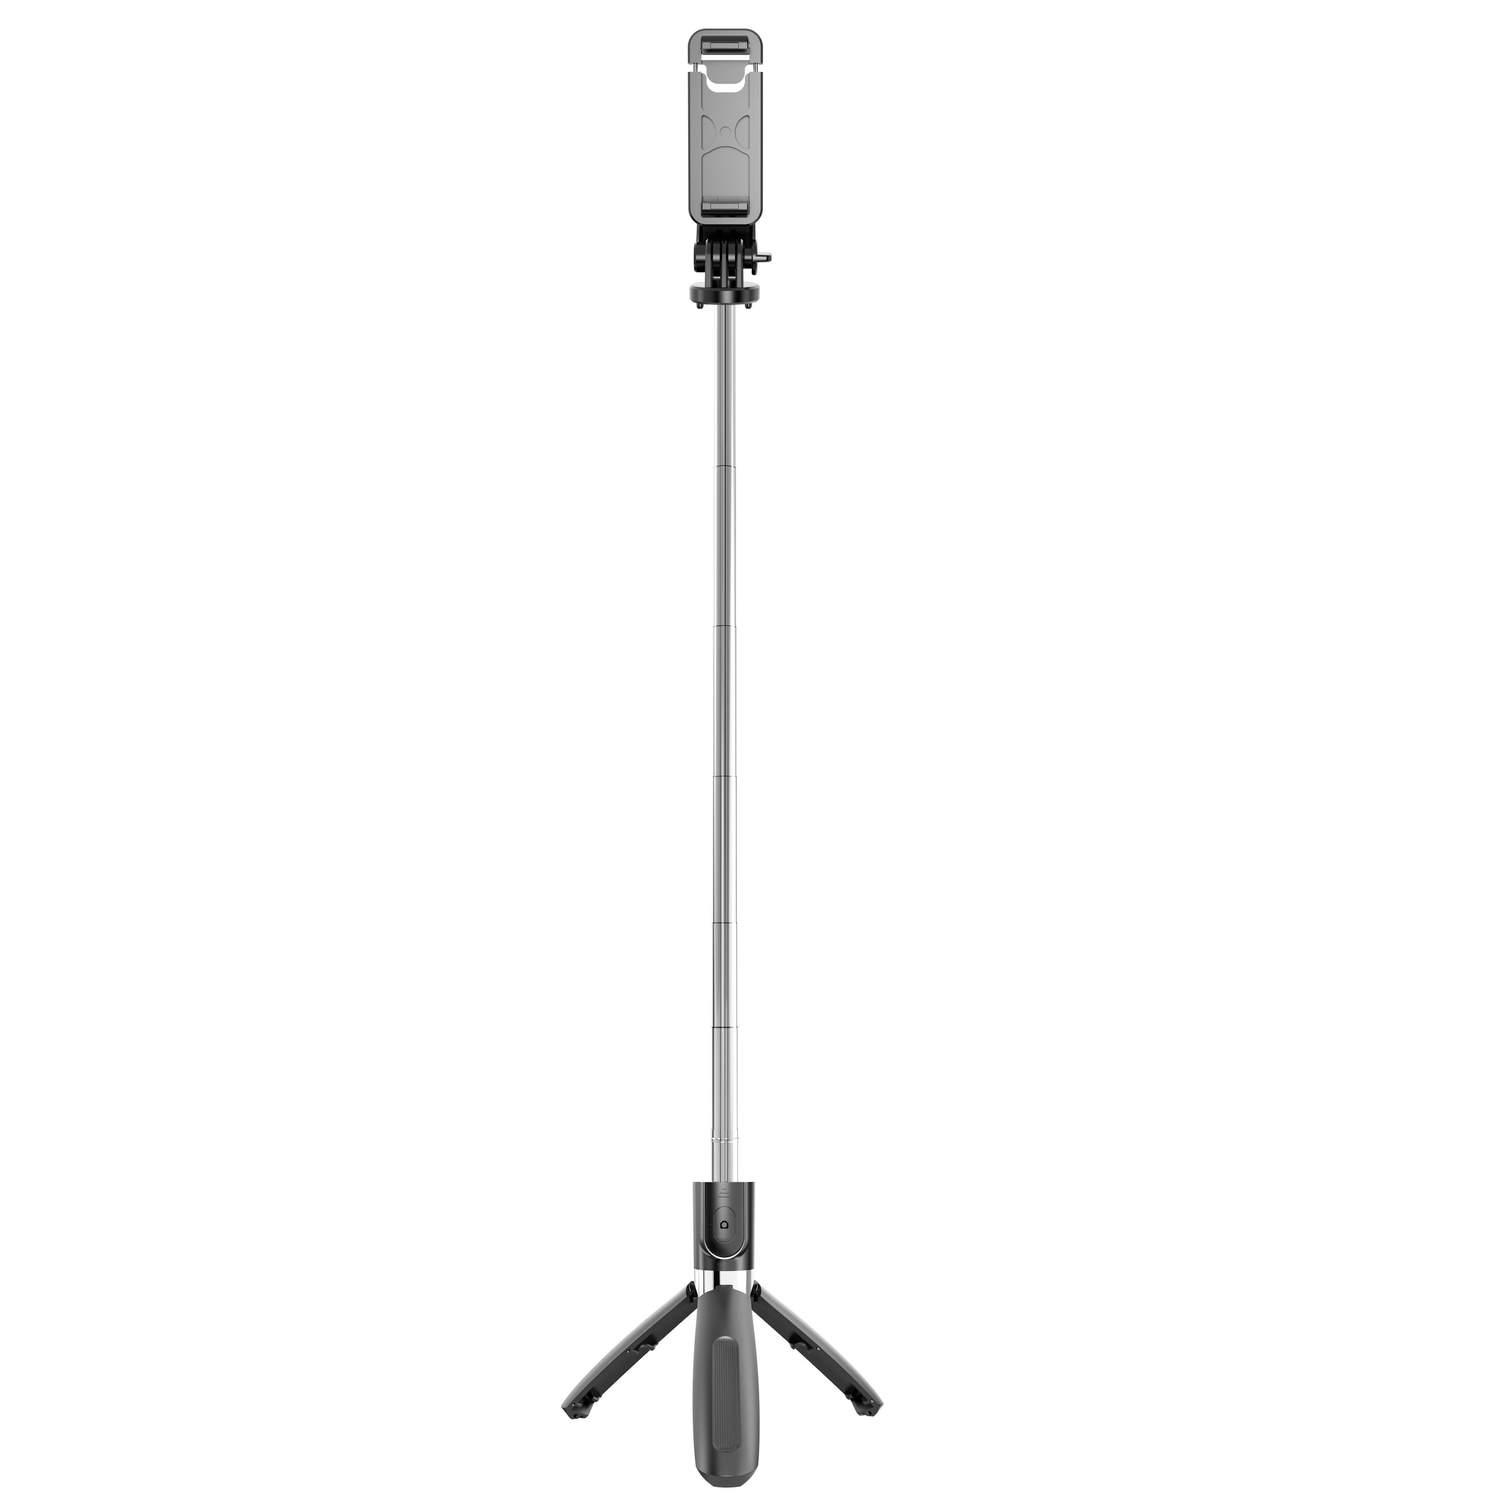 Kamera- mit INF Gopro-kompatibe schwarz Selfie-Stick, Fernbedienung und Selfie-Stick/Handystativ